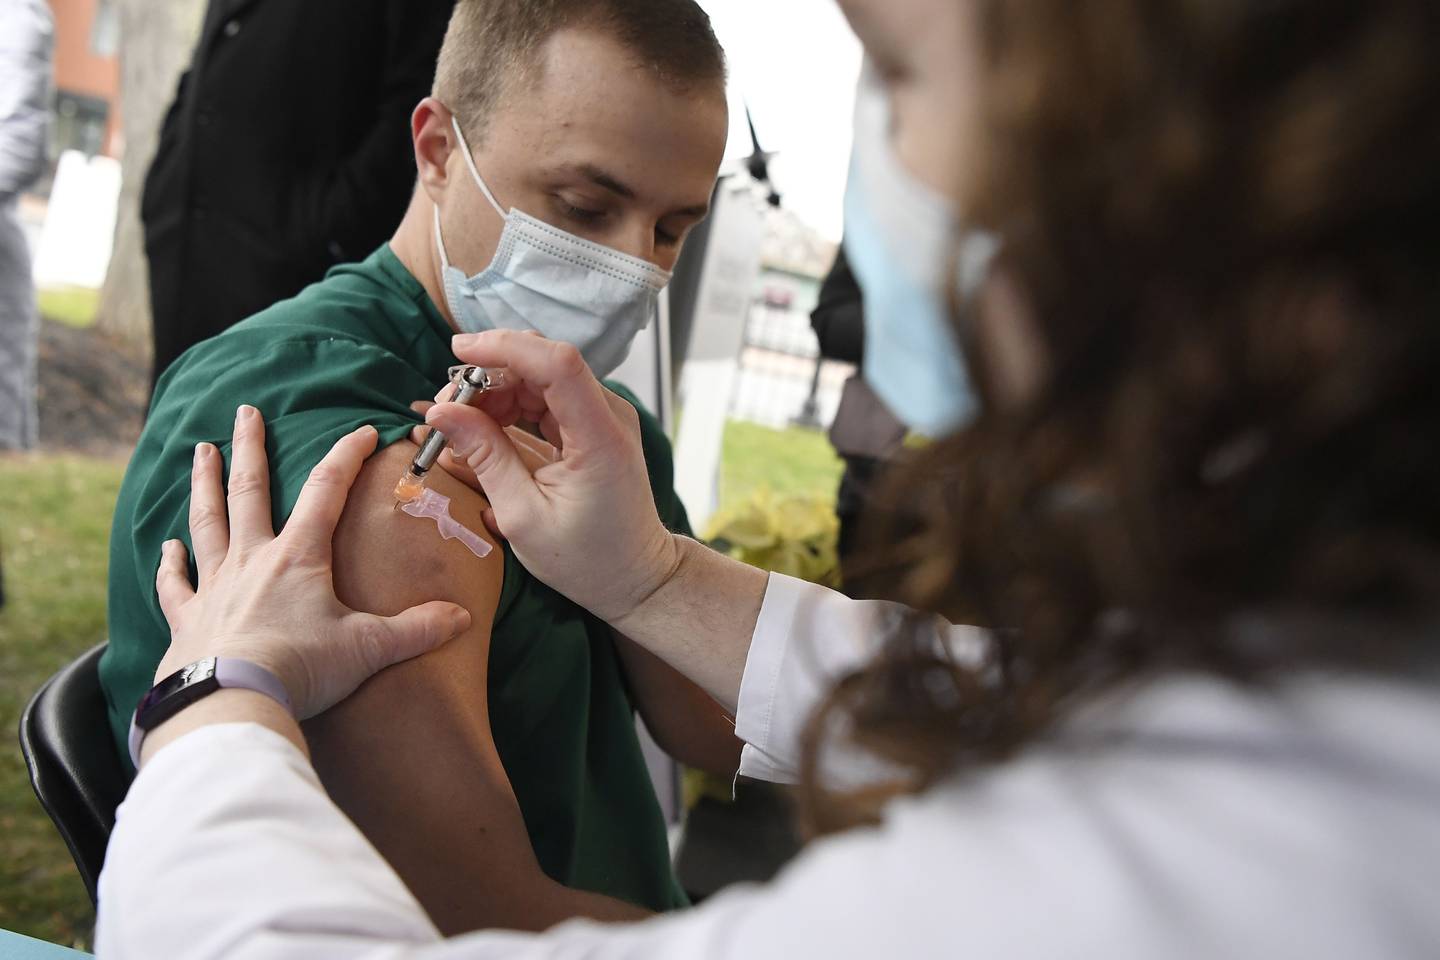 Colleen Teevan, de Hartford HealthCare, aplica la vacuna Pfizer-BioNTech contra el COVID-19 al enfermero Connor Paleski, el 14 de diciembre de 2020 en el Hospital de Hartford, Connecticut. (Foto AP/Jessica Hill)